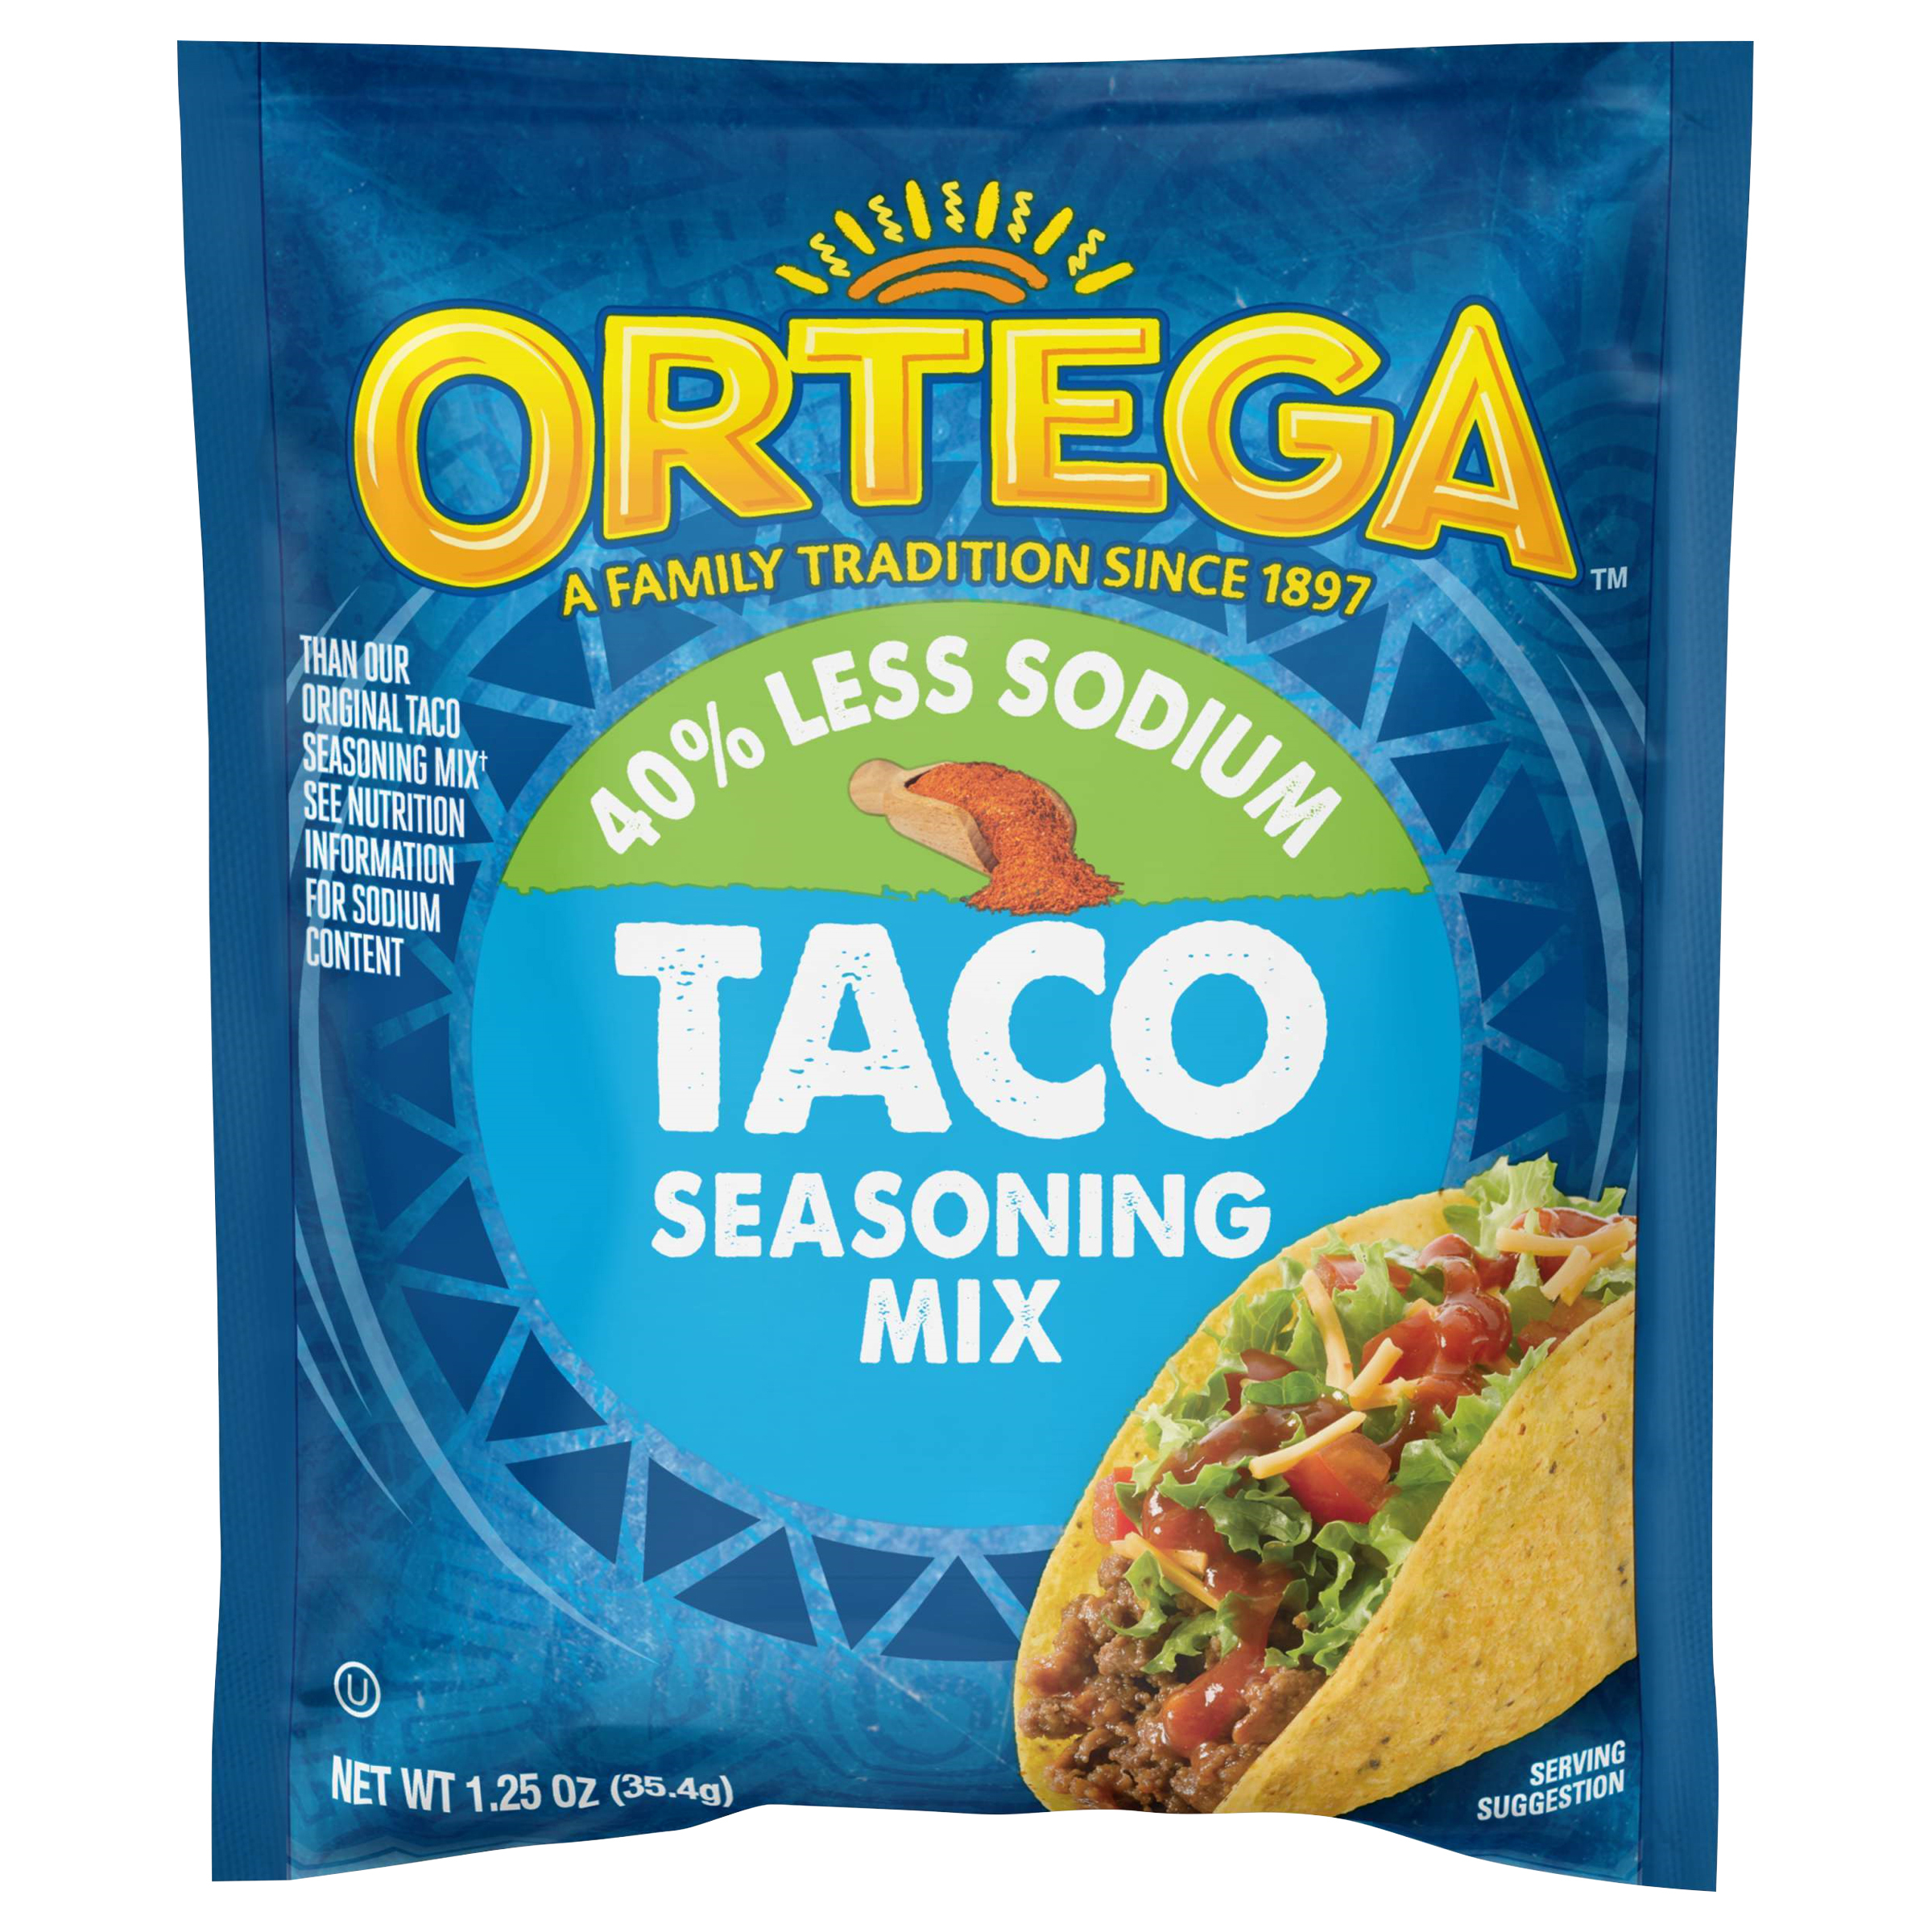 Ortega Taco 40% Less Sodium Seasoning Mix, 1.25 oz - image 1 of 11